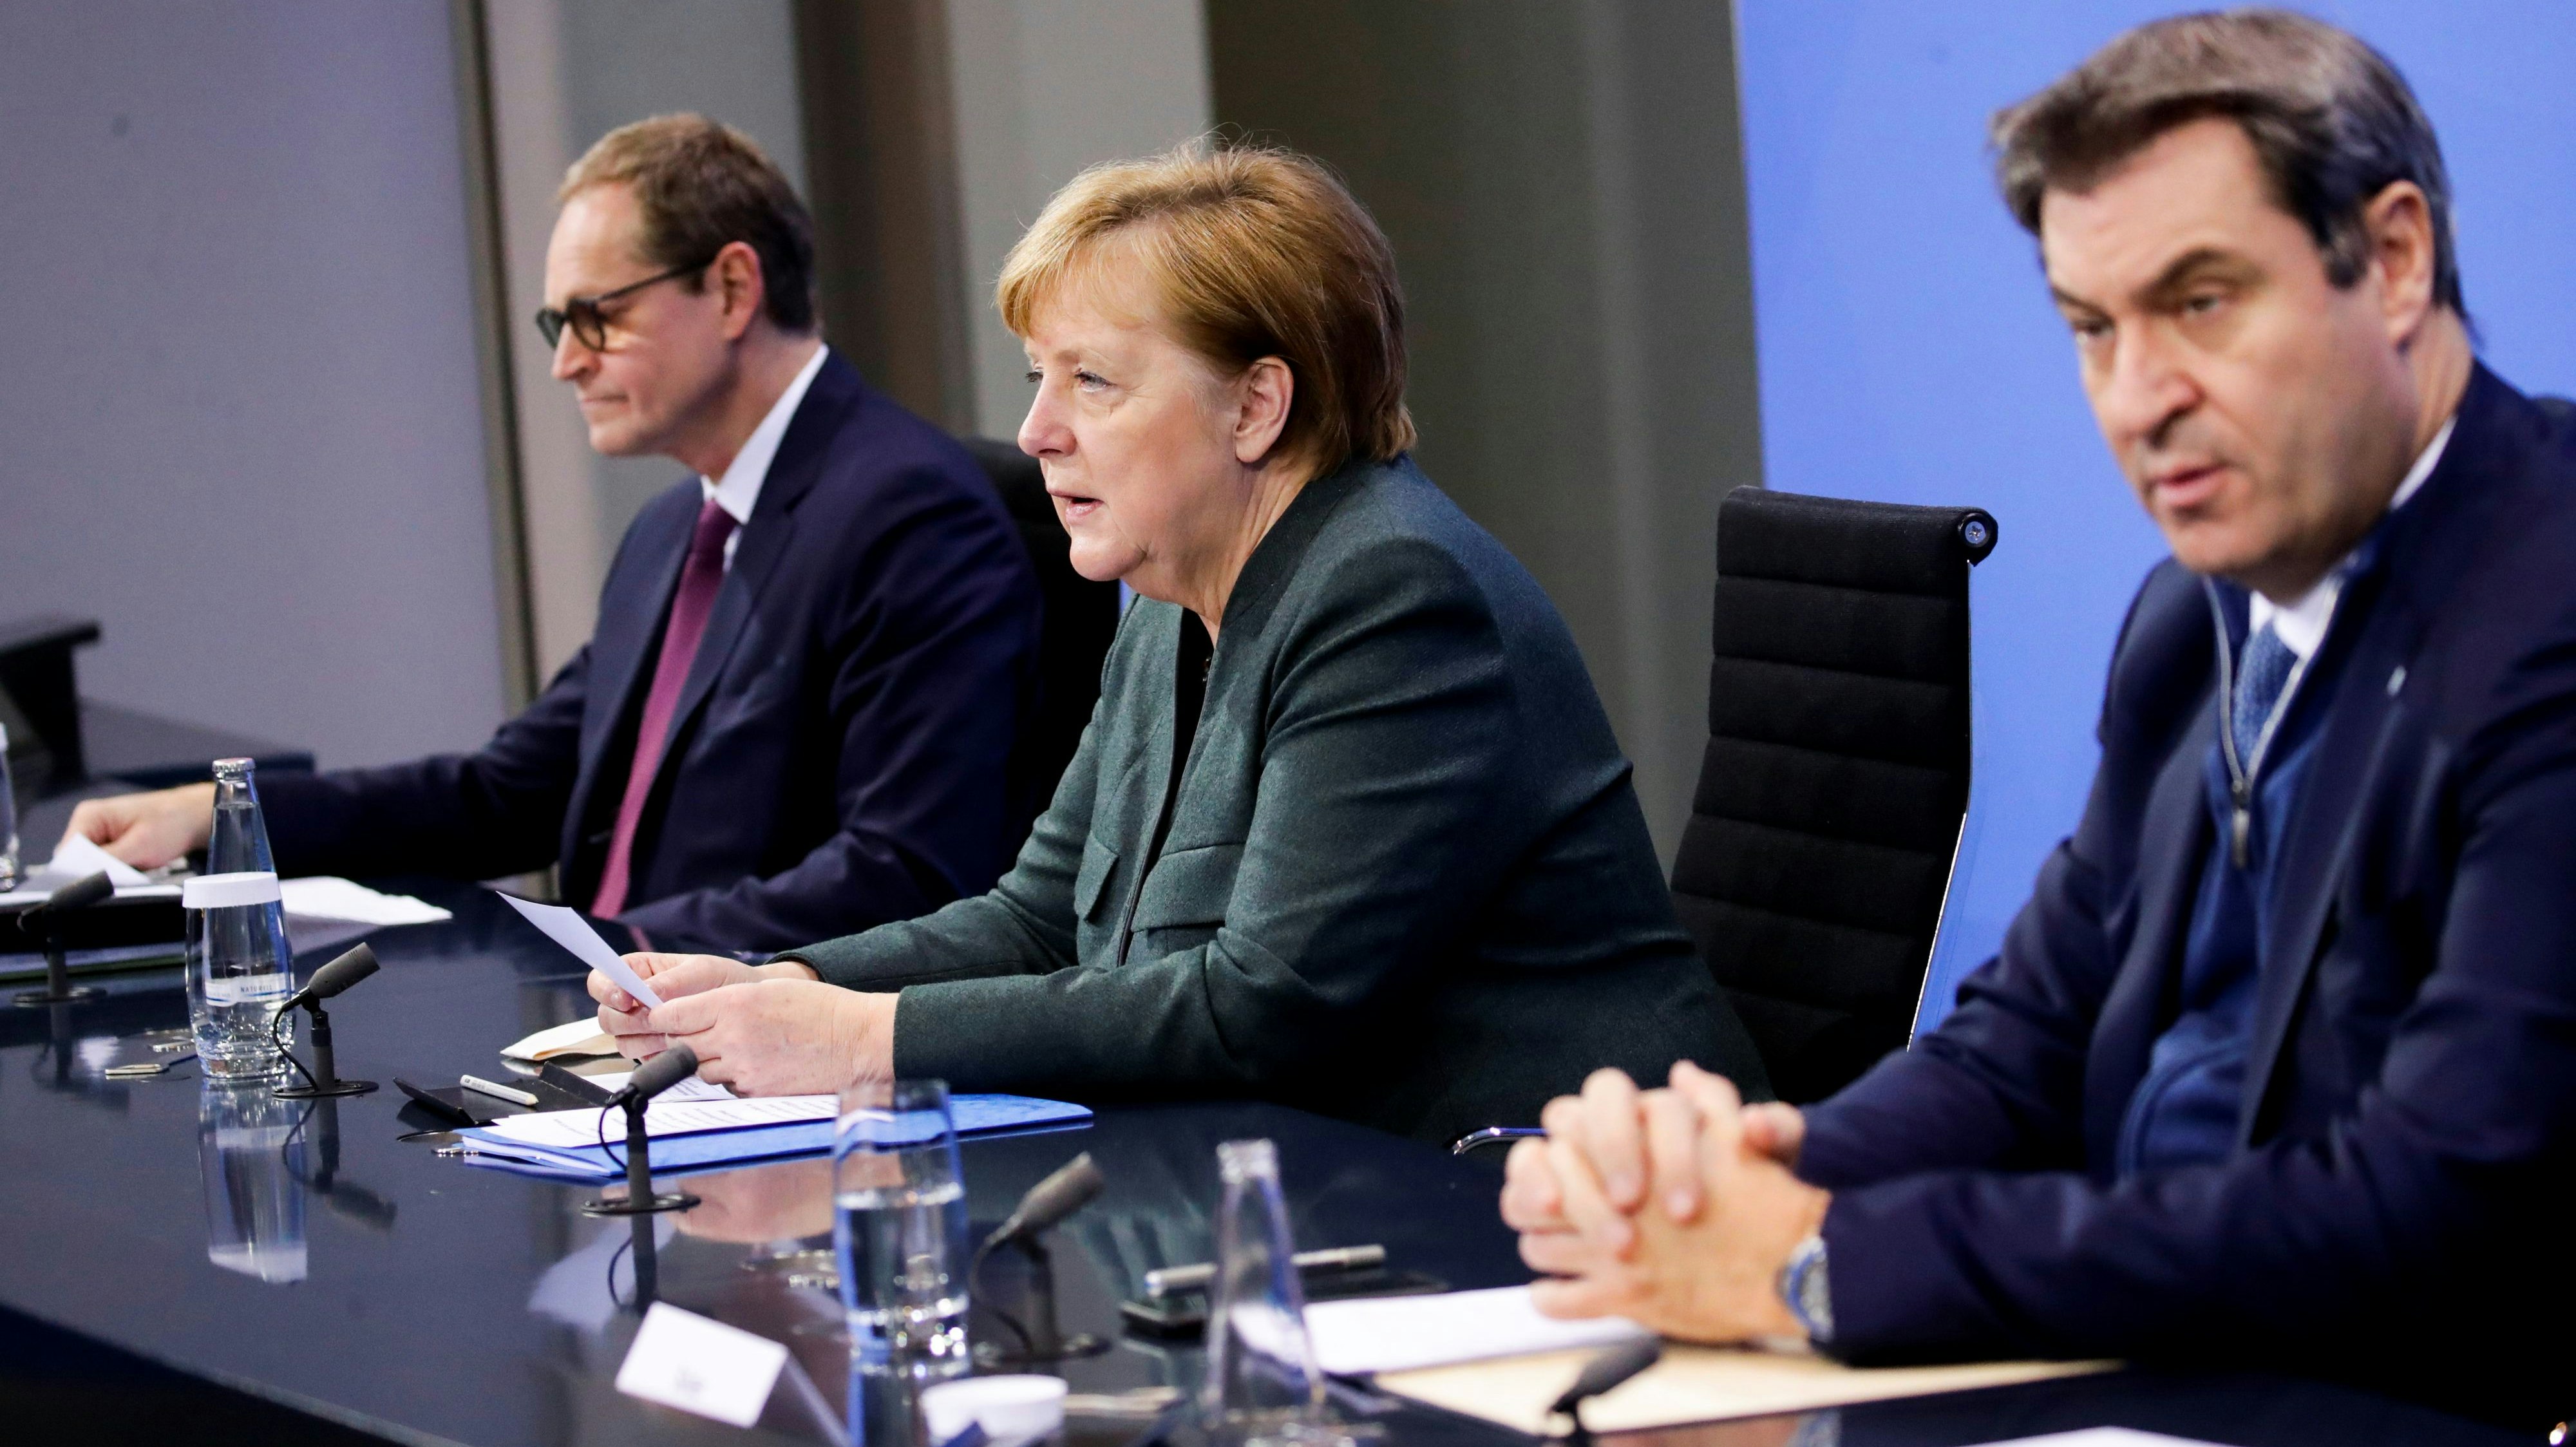 Bundeskanzlerin Angela Merkel (Mitte, CDU), Berlins Regierender Bürgermeister Michael Müller (links, SPD) und der CSU-Vorsitzende Markus Söder geben eine Pressekonferenz im Bundeskanzleramt zu den Ergebnissen der Bund-Länder-Beratungen. Foto: dpa/Hanschke/Reuters/Pool